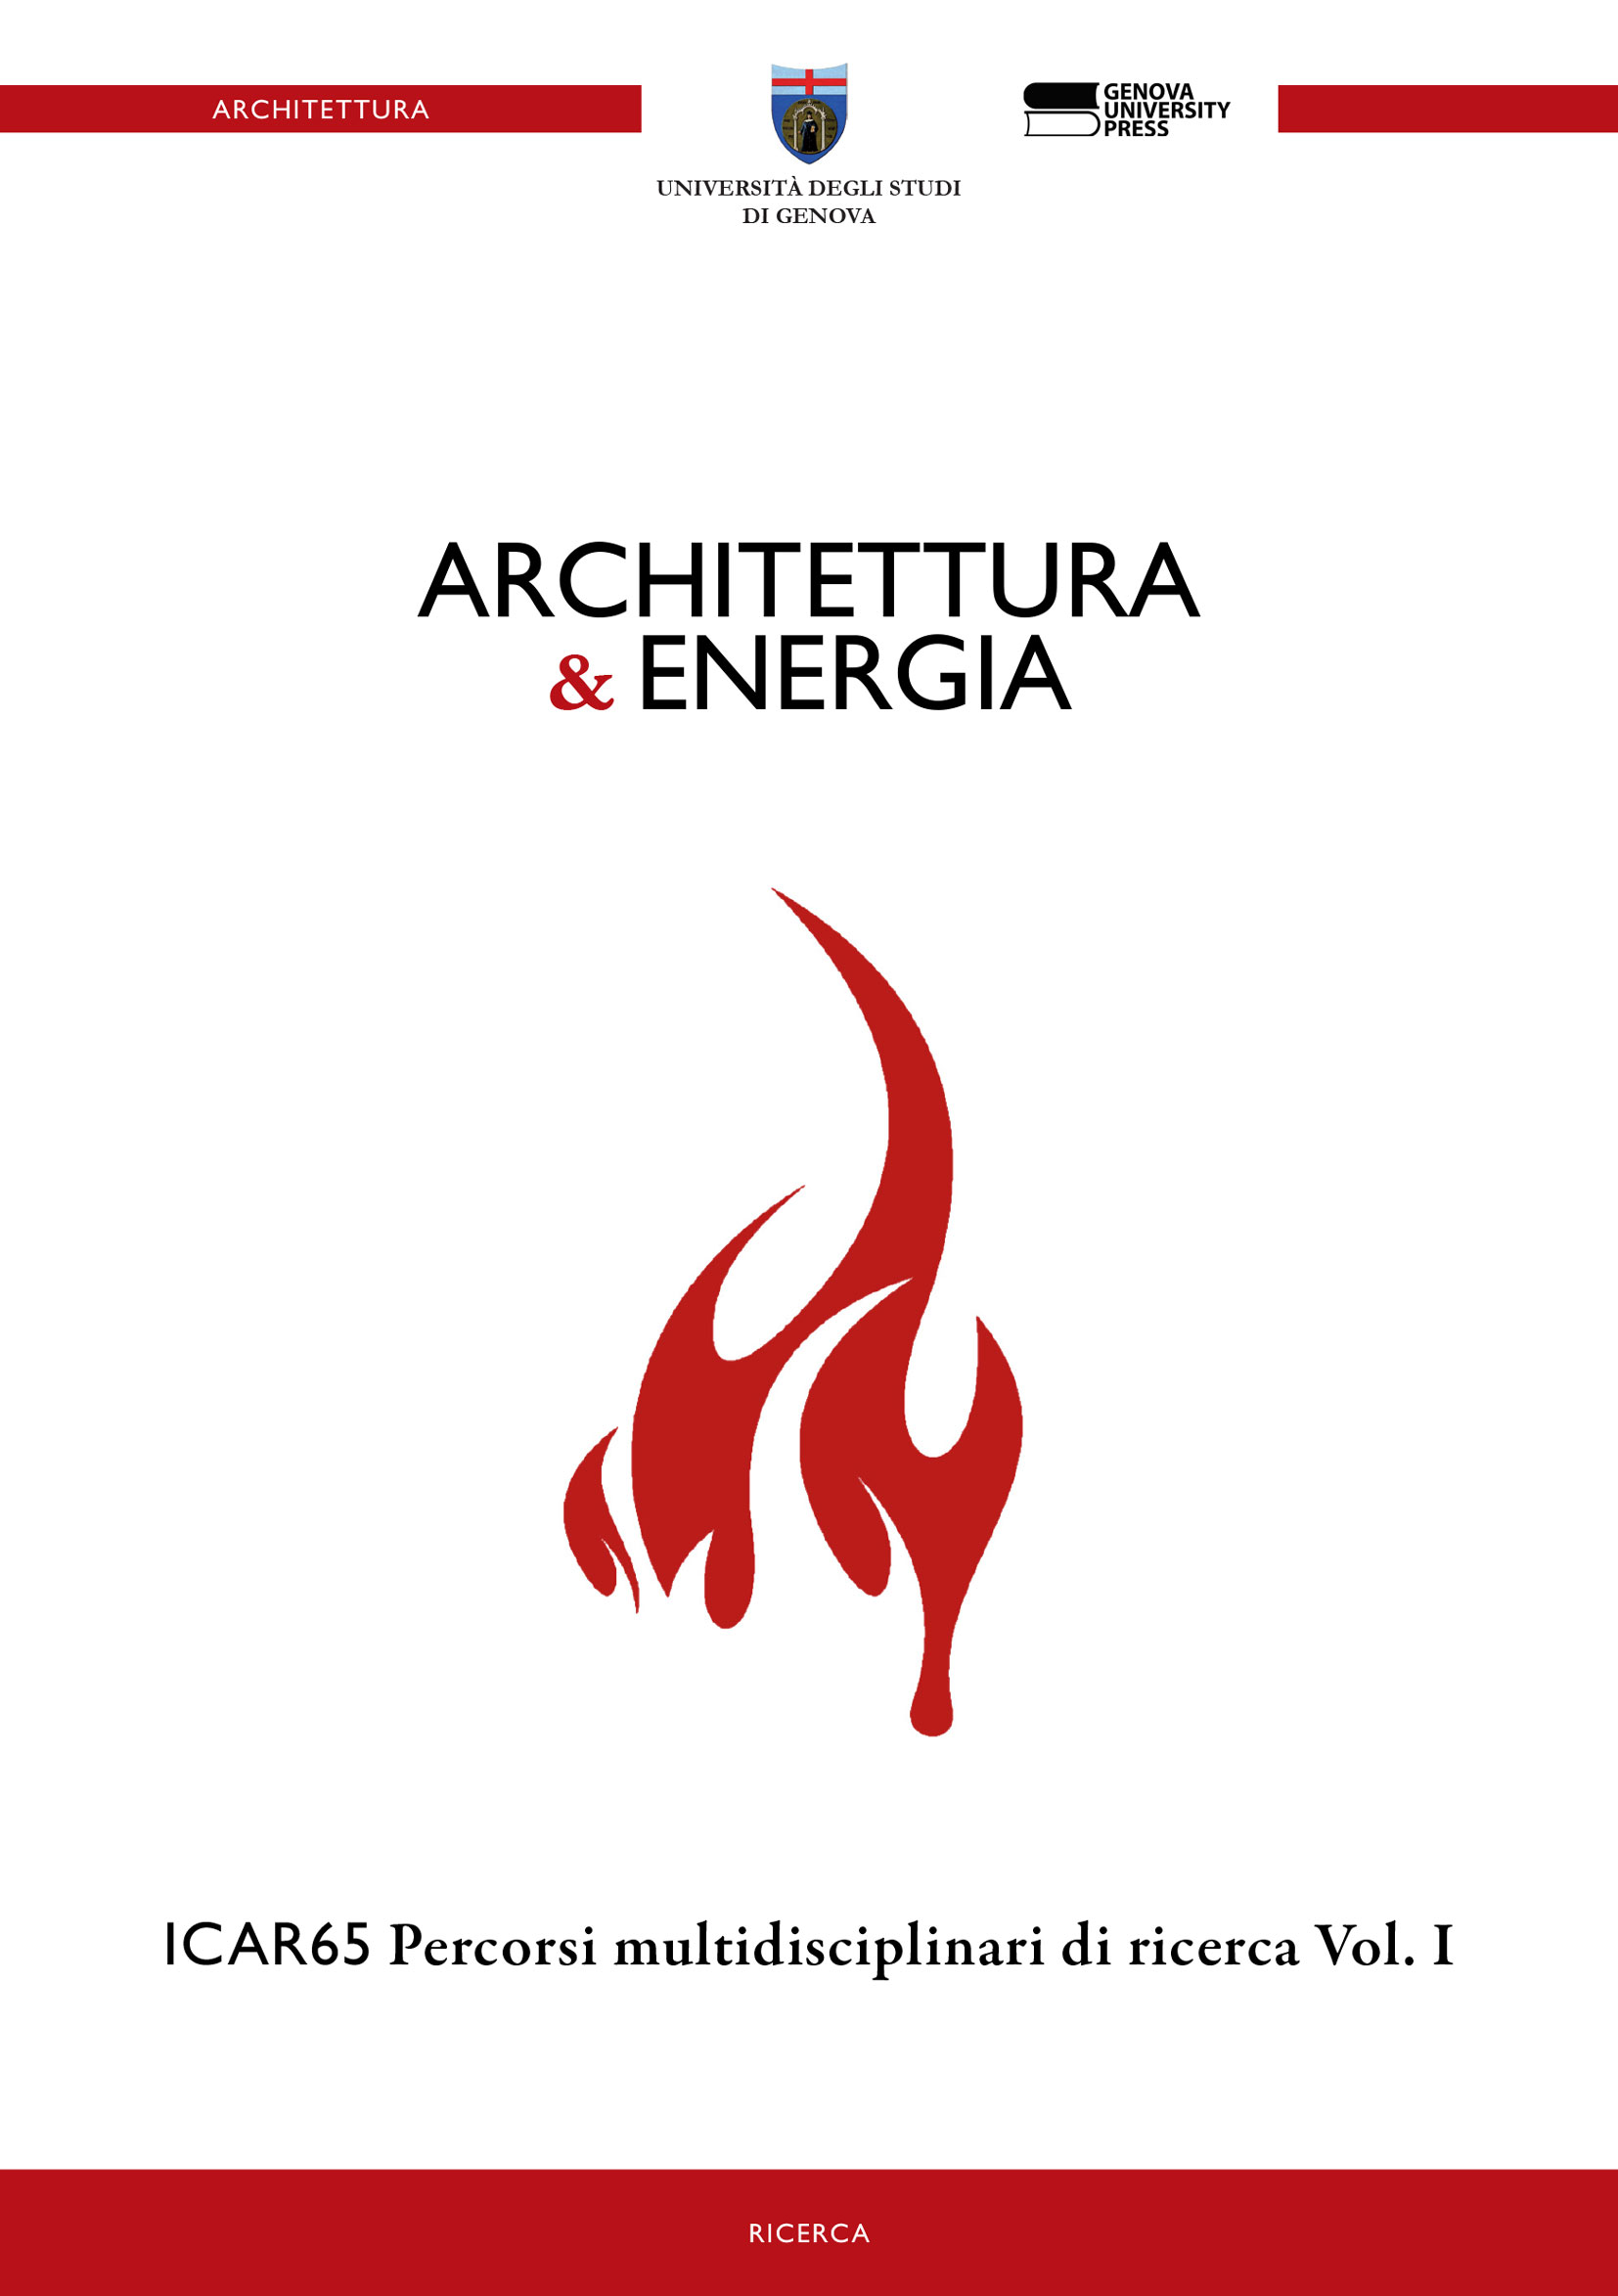 Architettura & Energia